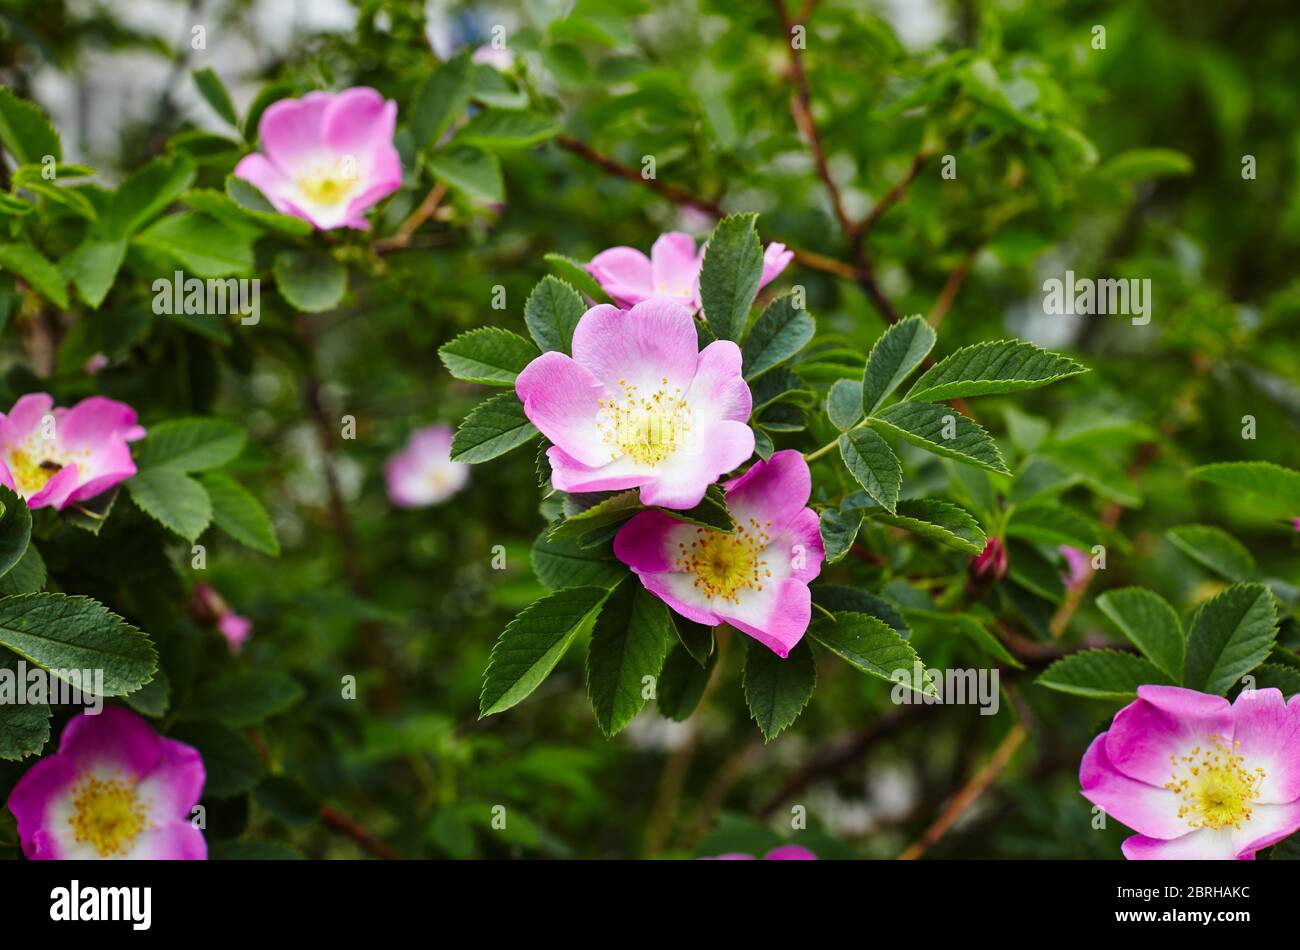 Hermosa ramita de briar de primavera (rosa de perro o rosa de rosa), puede ser utilizado como fondo. Flor rosa, brotes, hojas verdes Foto de stock